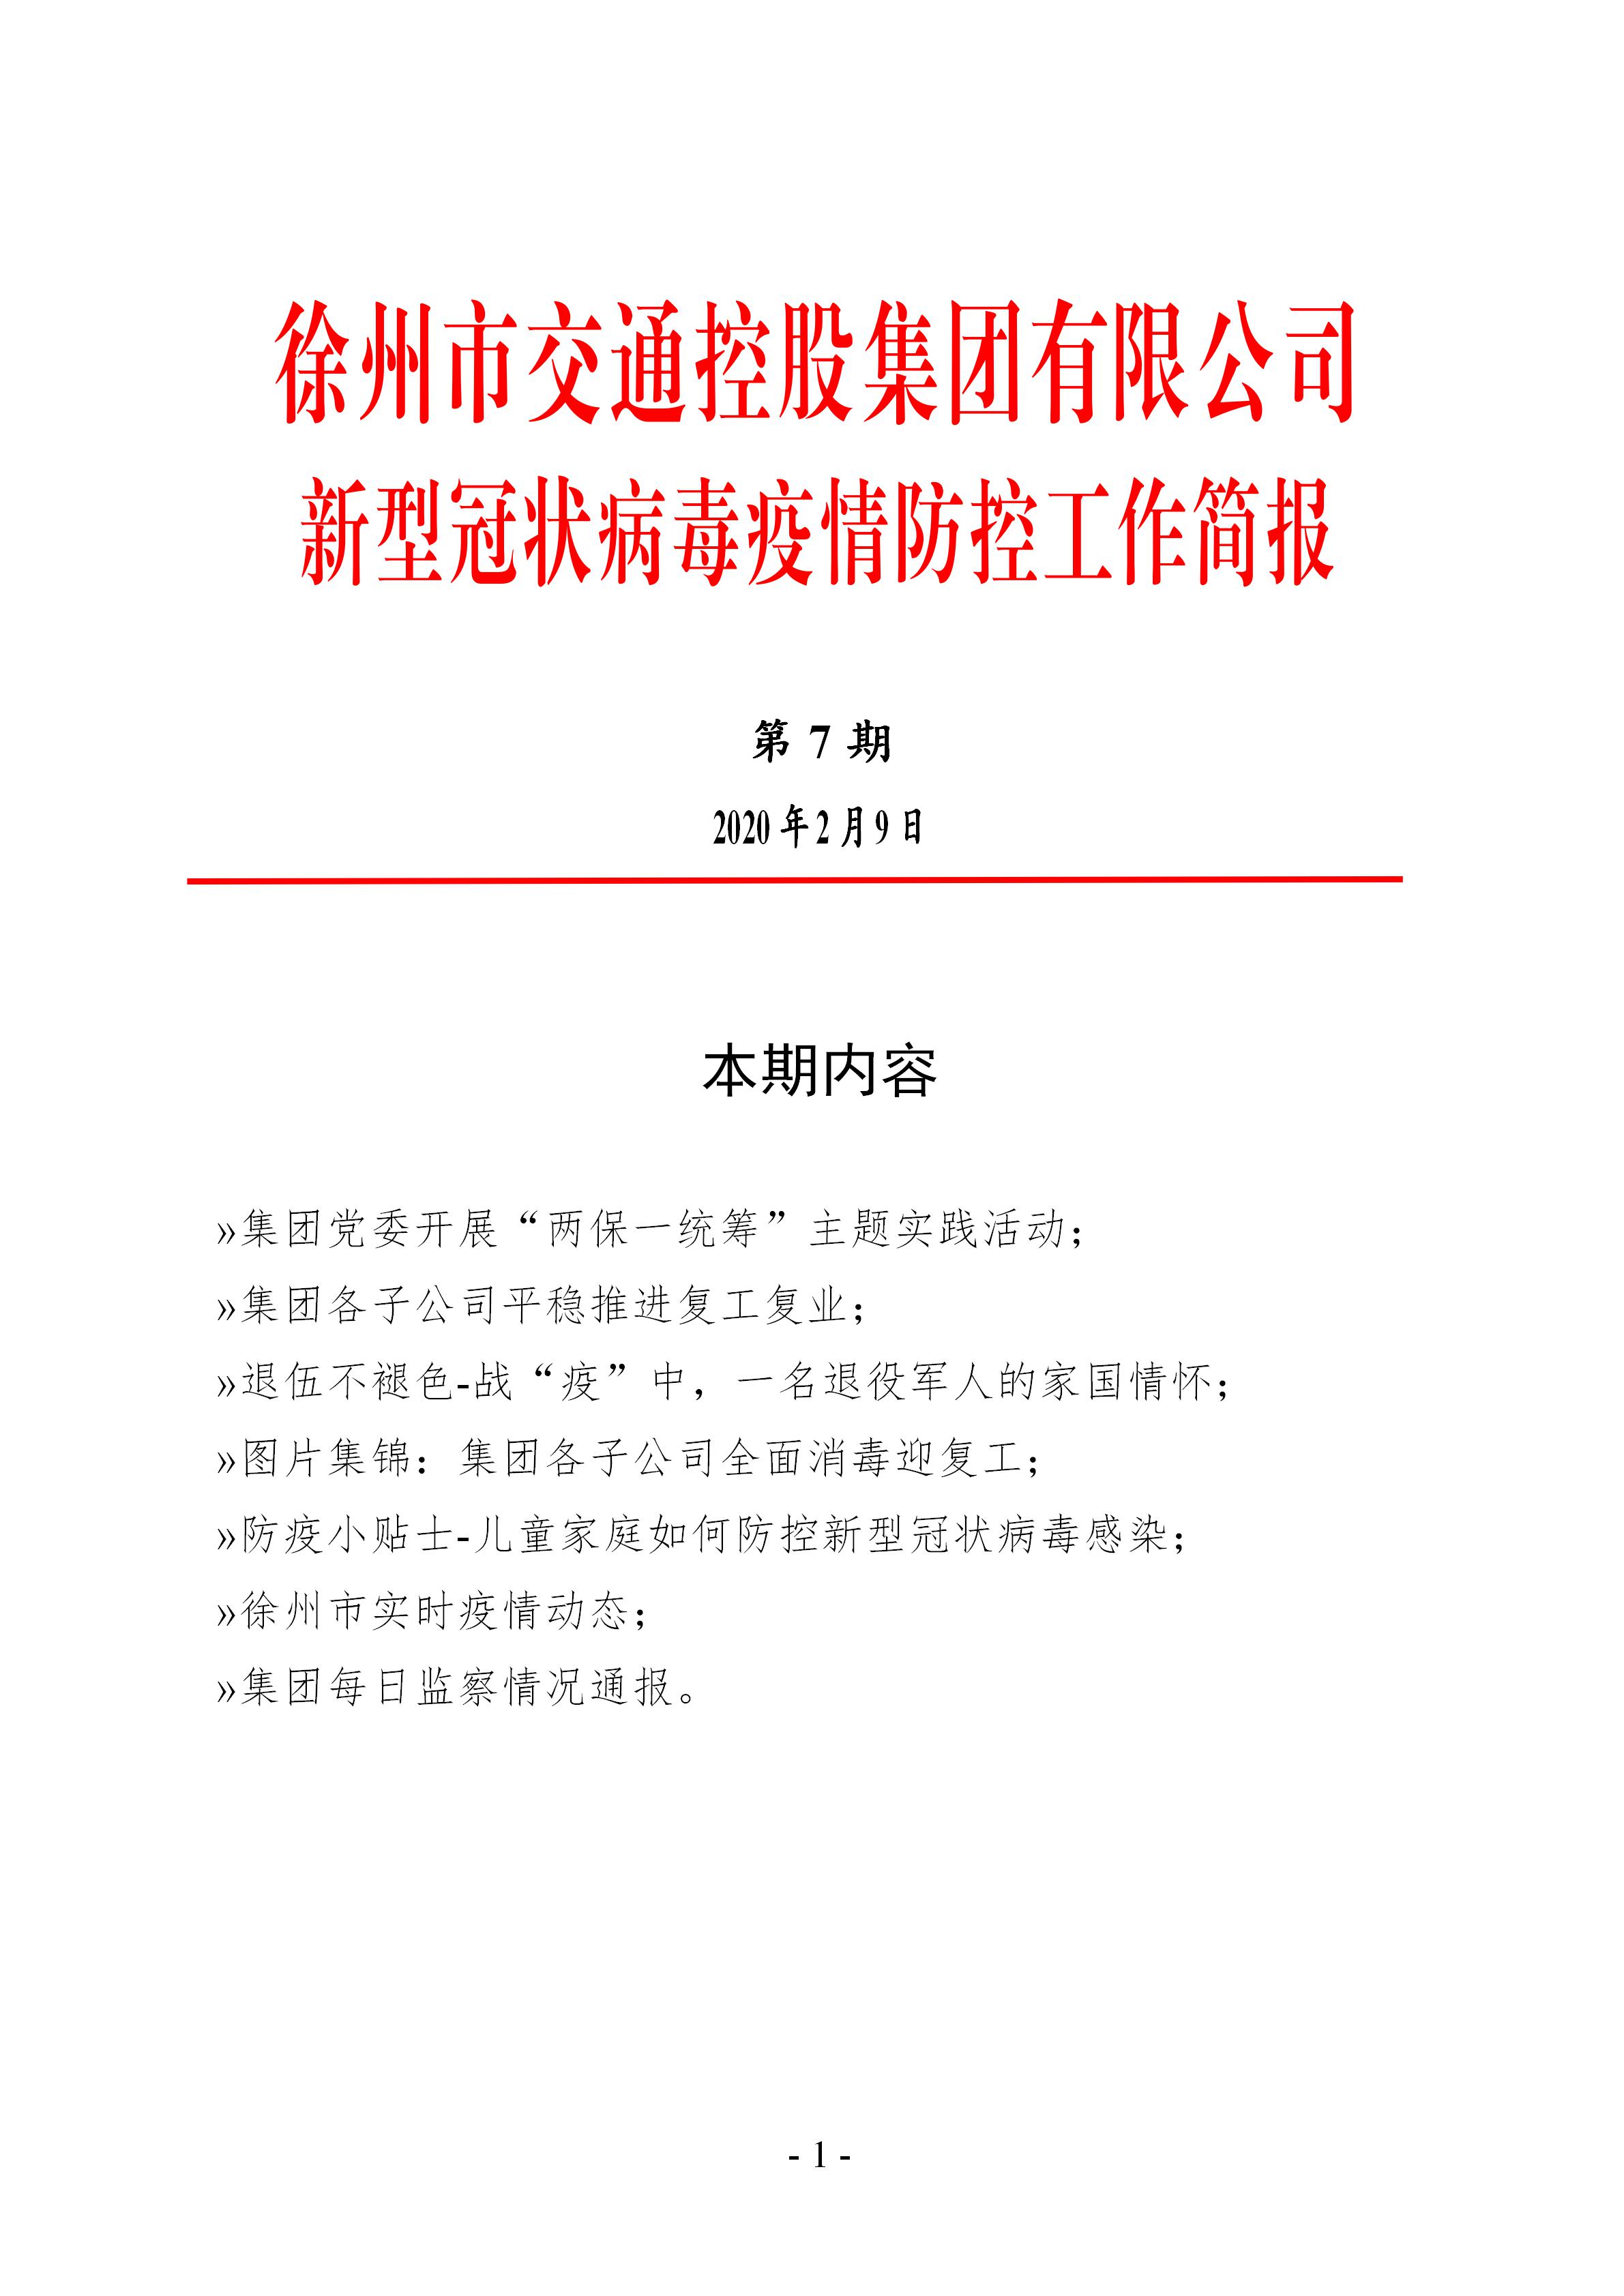 （第七期2.9）徐州市交通控股集团新型冠状病毒防疫防控工作简报